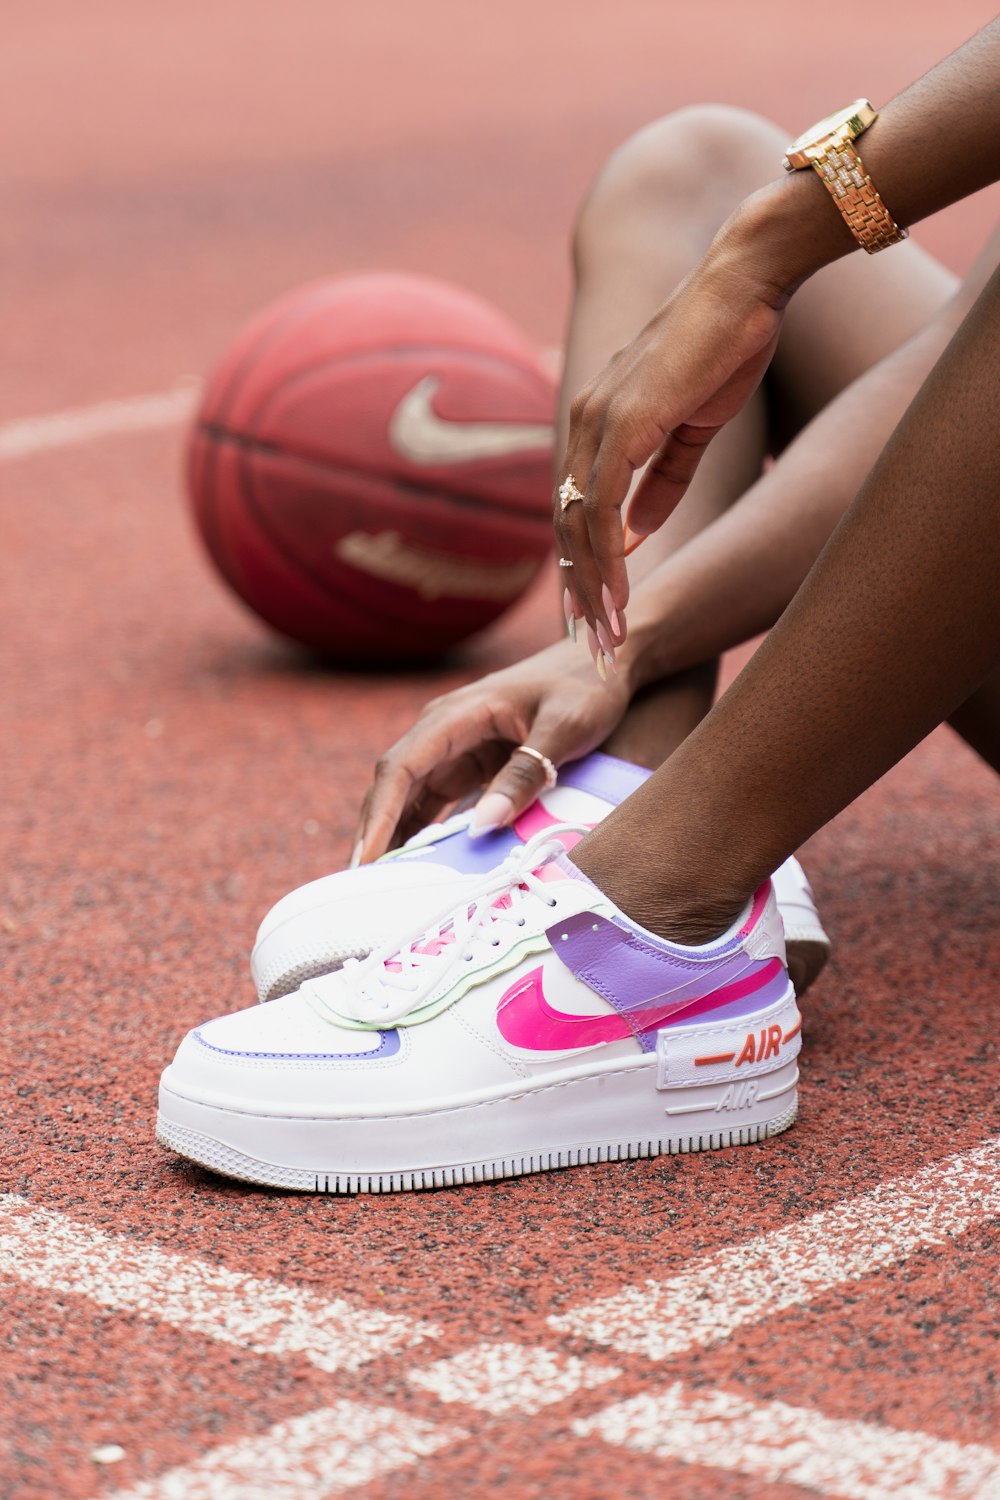 Persona che indossa scarpe da ginnastica nike bianche e rosa foto – Stile  Immagine gratuita su Unsplash